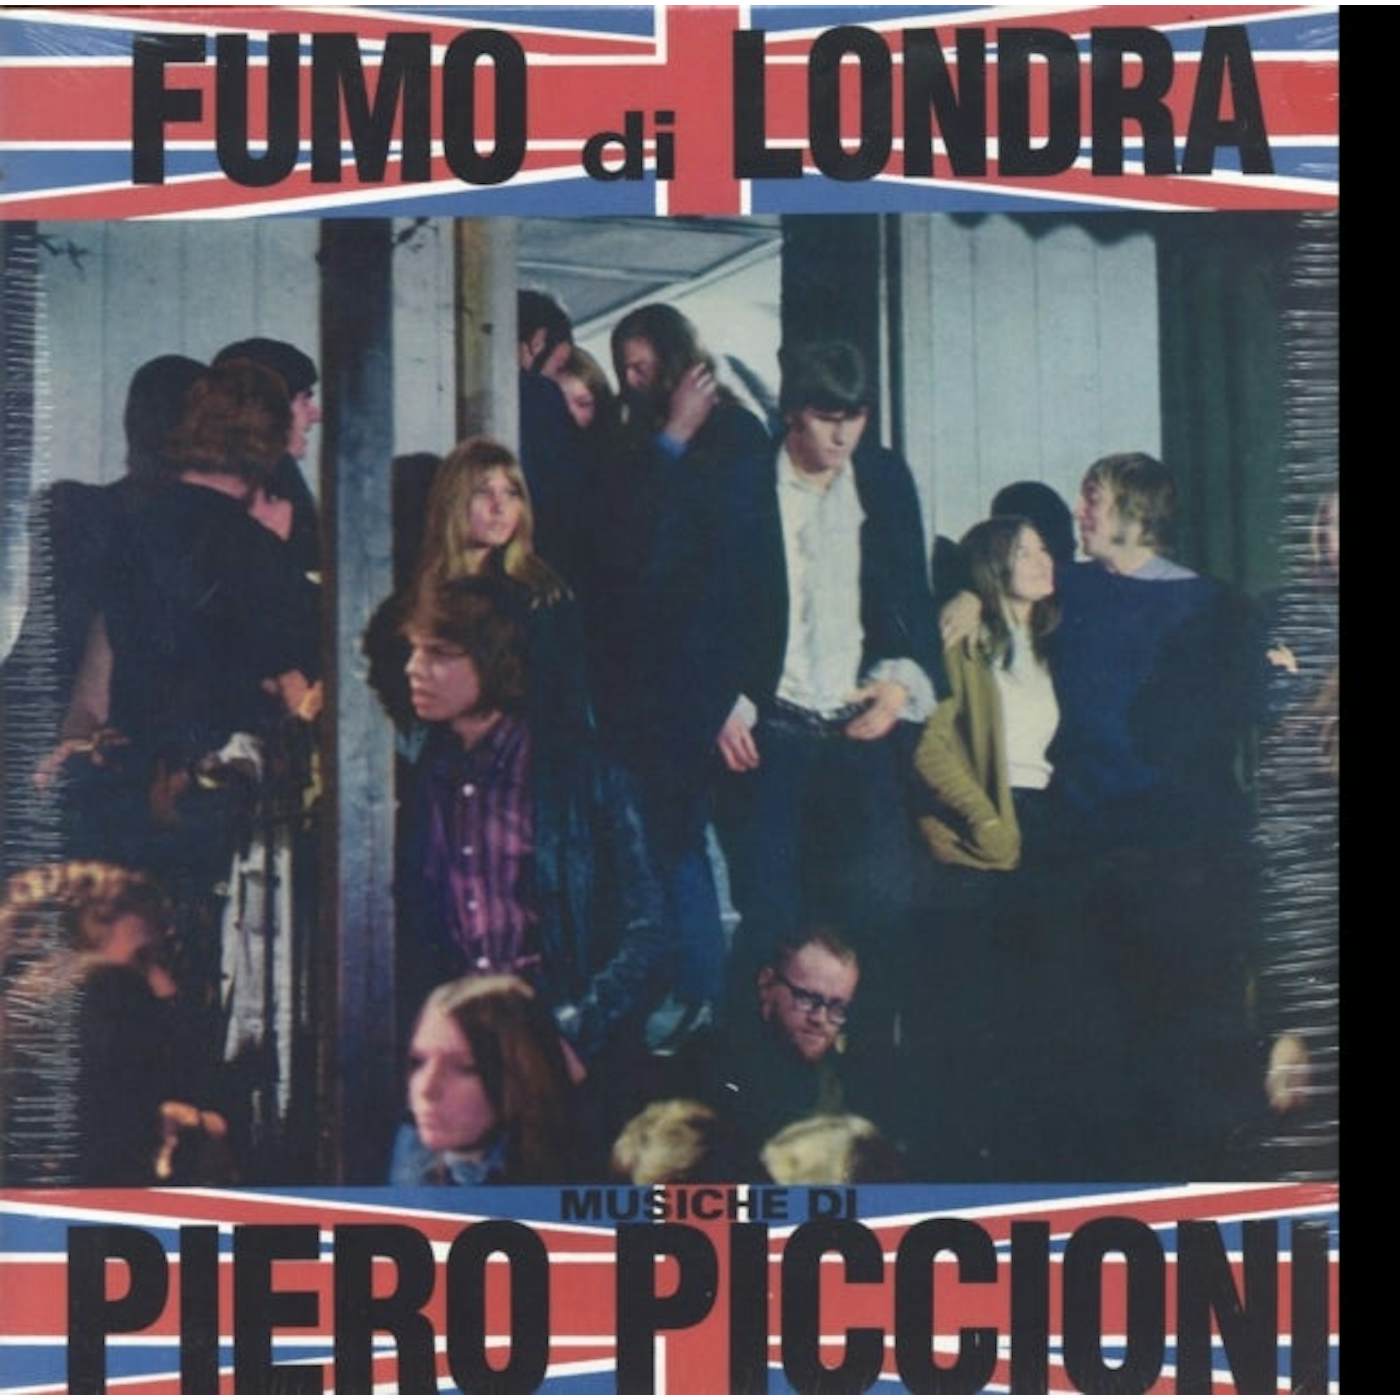 Piero Piccioni LP Vinyl Record - Fumo Di Londra - Original Soundtrack